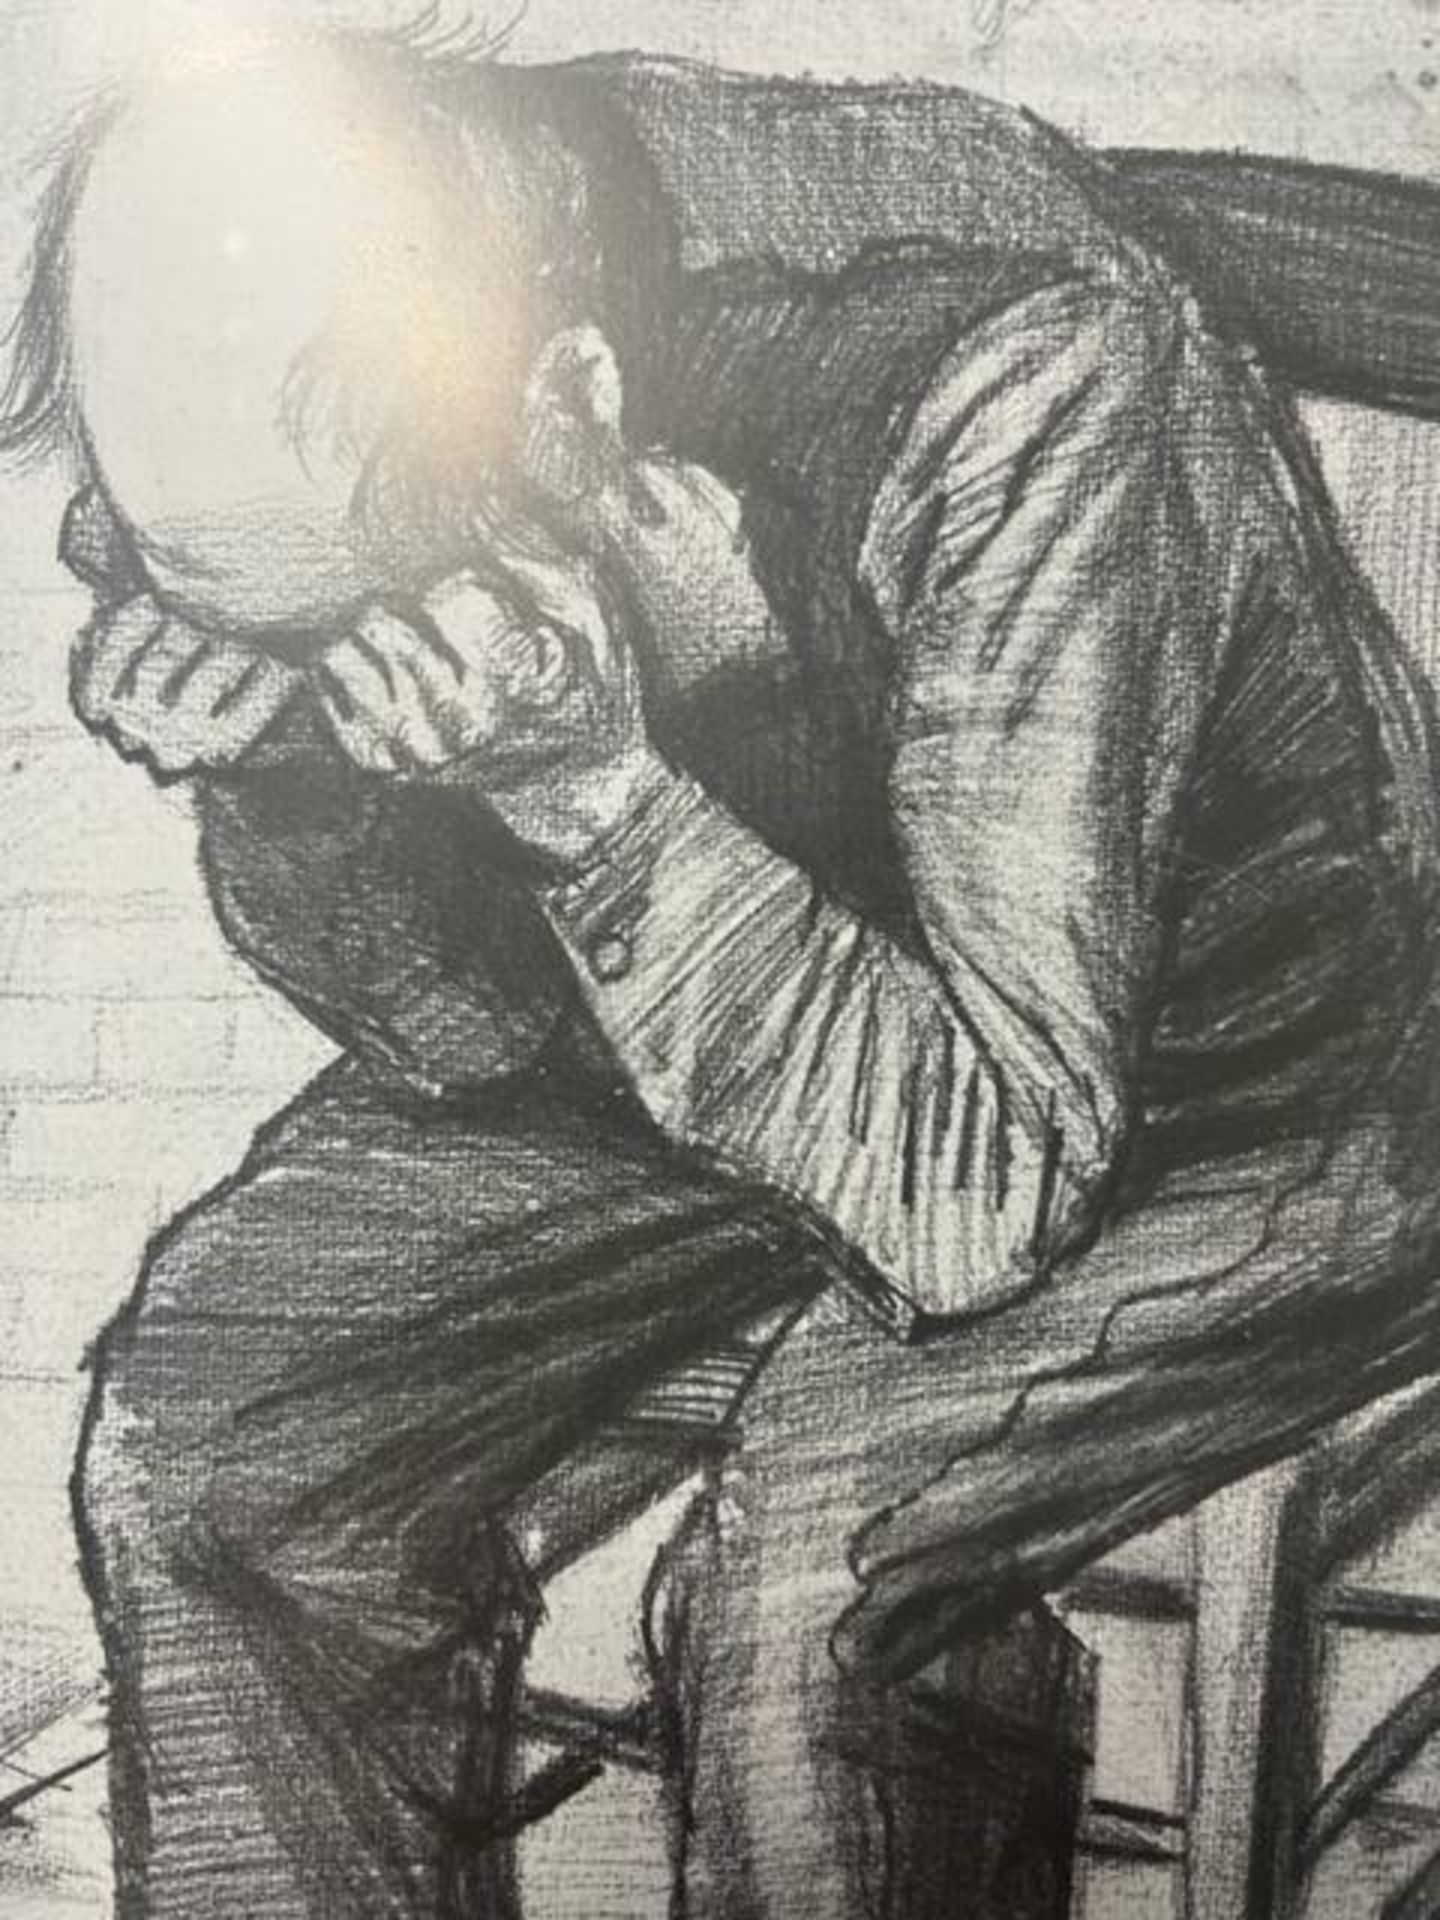 Vincent van Gogh "Old Man in Grief" Print. - Bild 3 aus 6